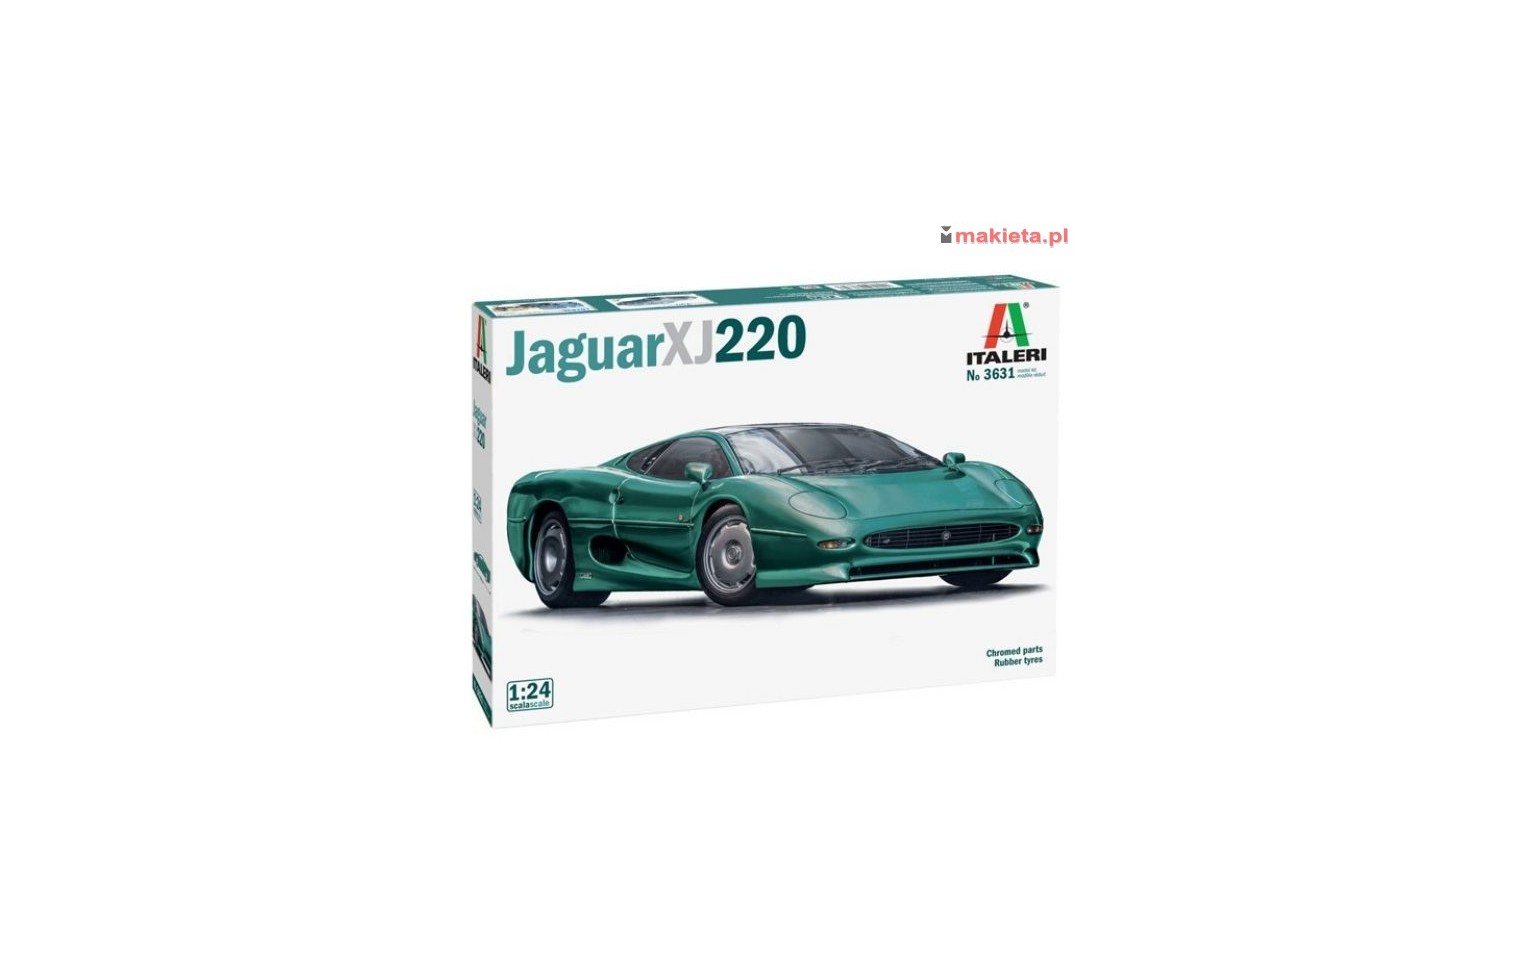 Italeri 3631. Jaguar XJ 220, skala 1:24, model do sklejania.